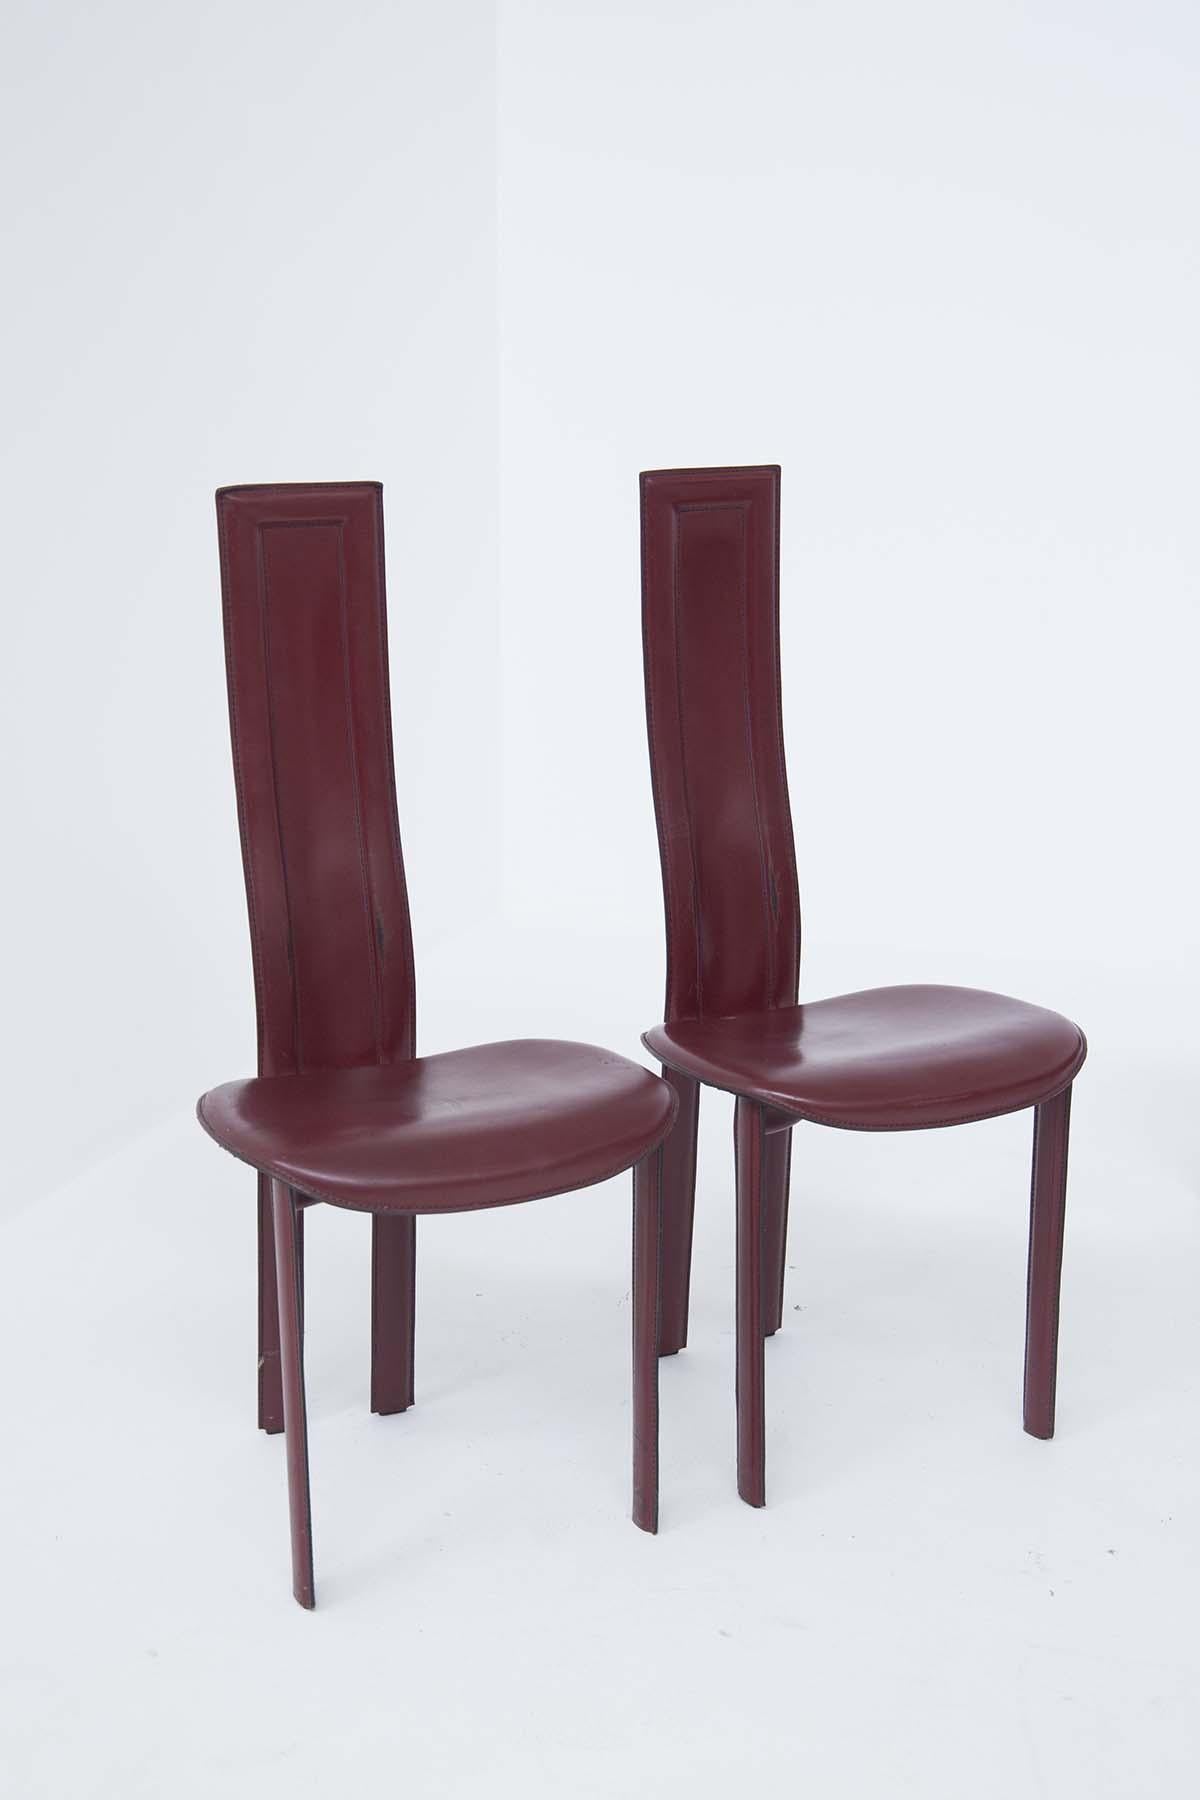 Satz von 6 Tischstühlen in bordeauxfarbenem Leder mit sichtbaren Nähten, vier sind für die Seite des Tisches, zwei sind die Kopfstühle, mit einer höheren und längeren Rückenlehne, ihr Sitz ist abgerundet.
Alle Vintage-Lederstühle haben das originale